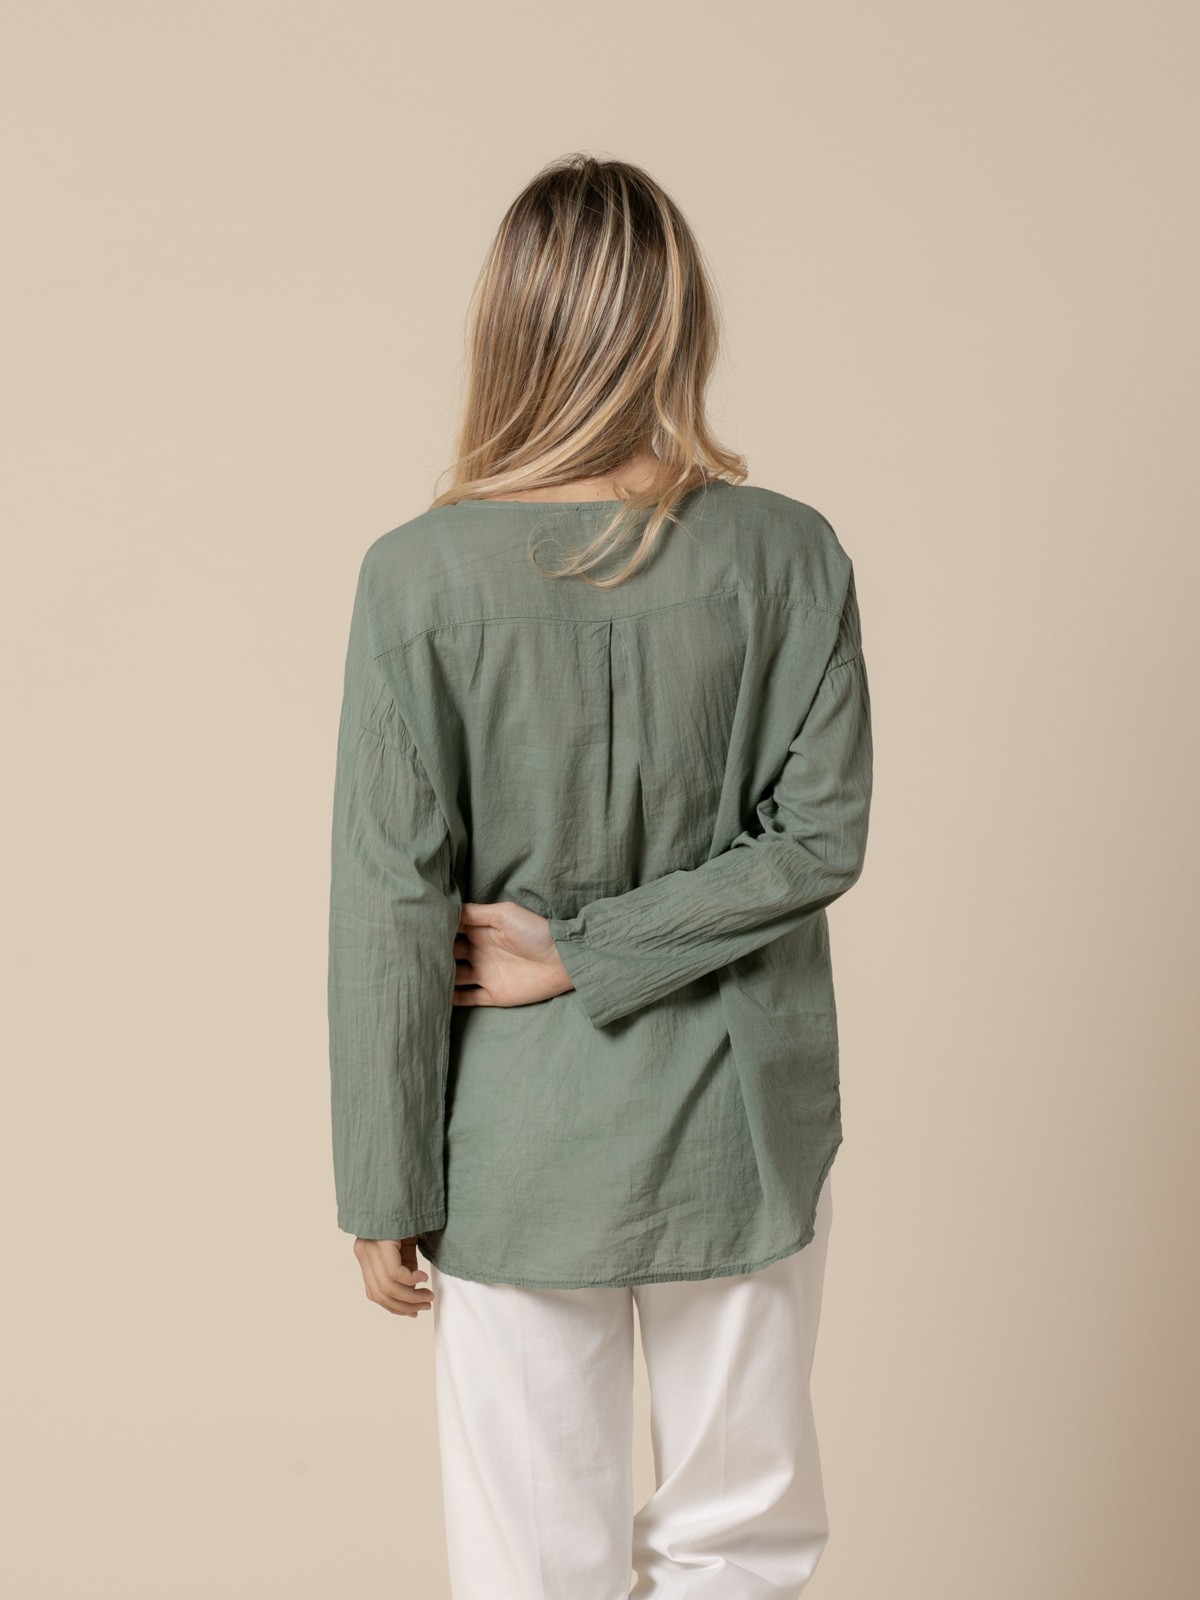 Woman 100% cotton voile wide blouse Khaki